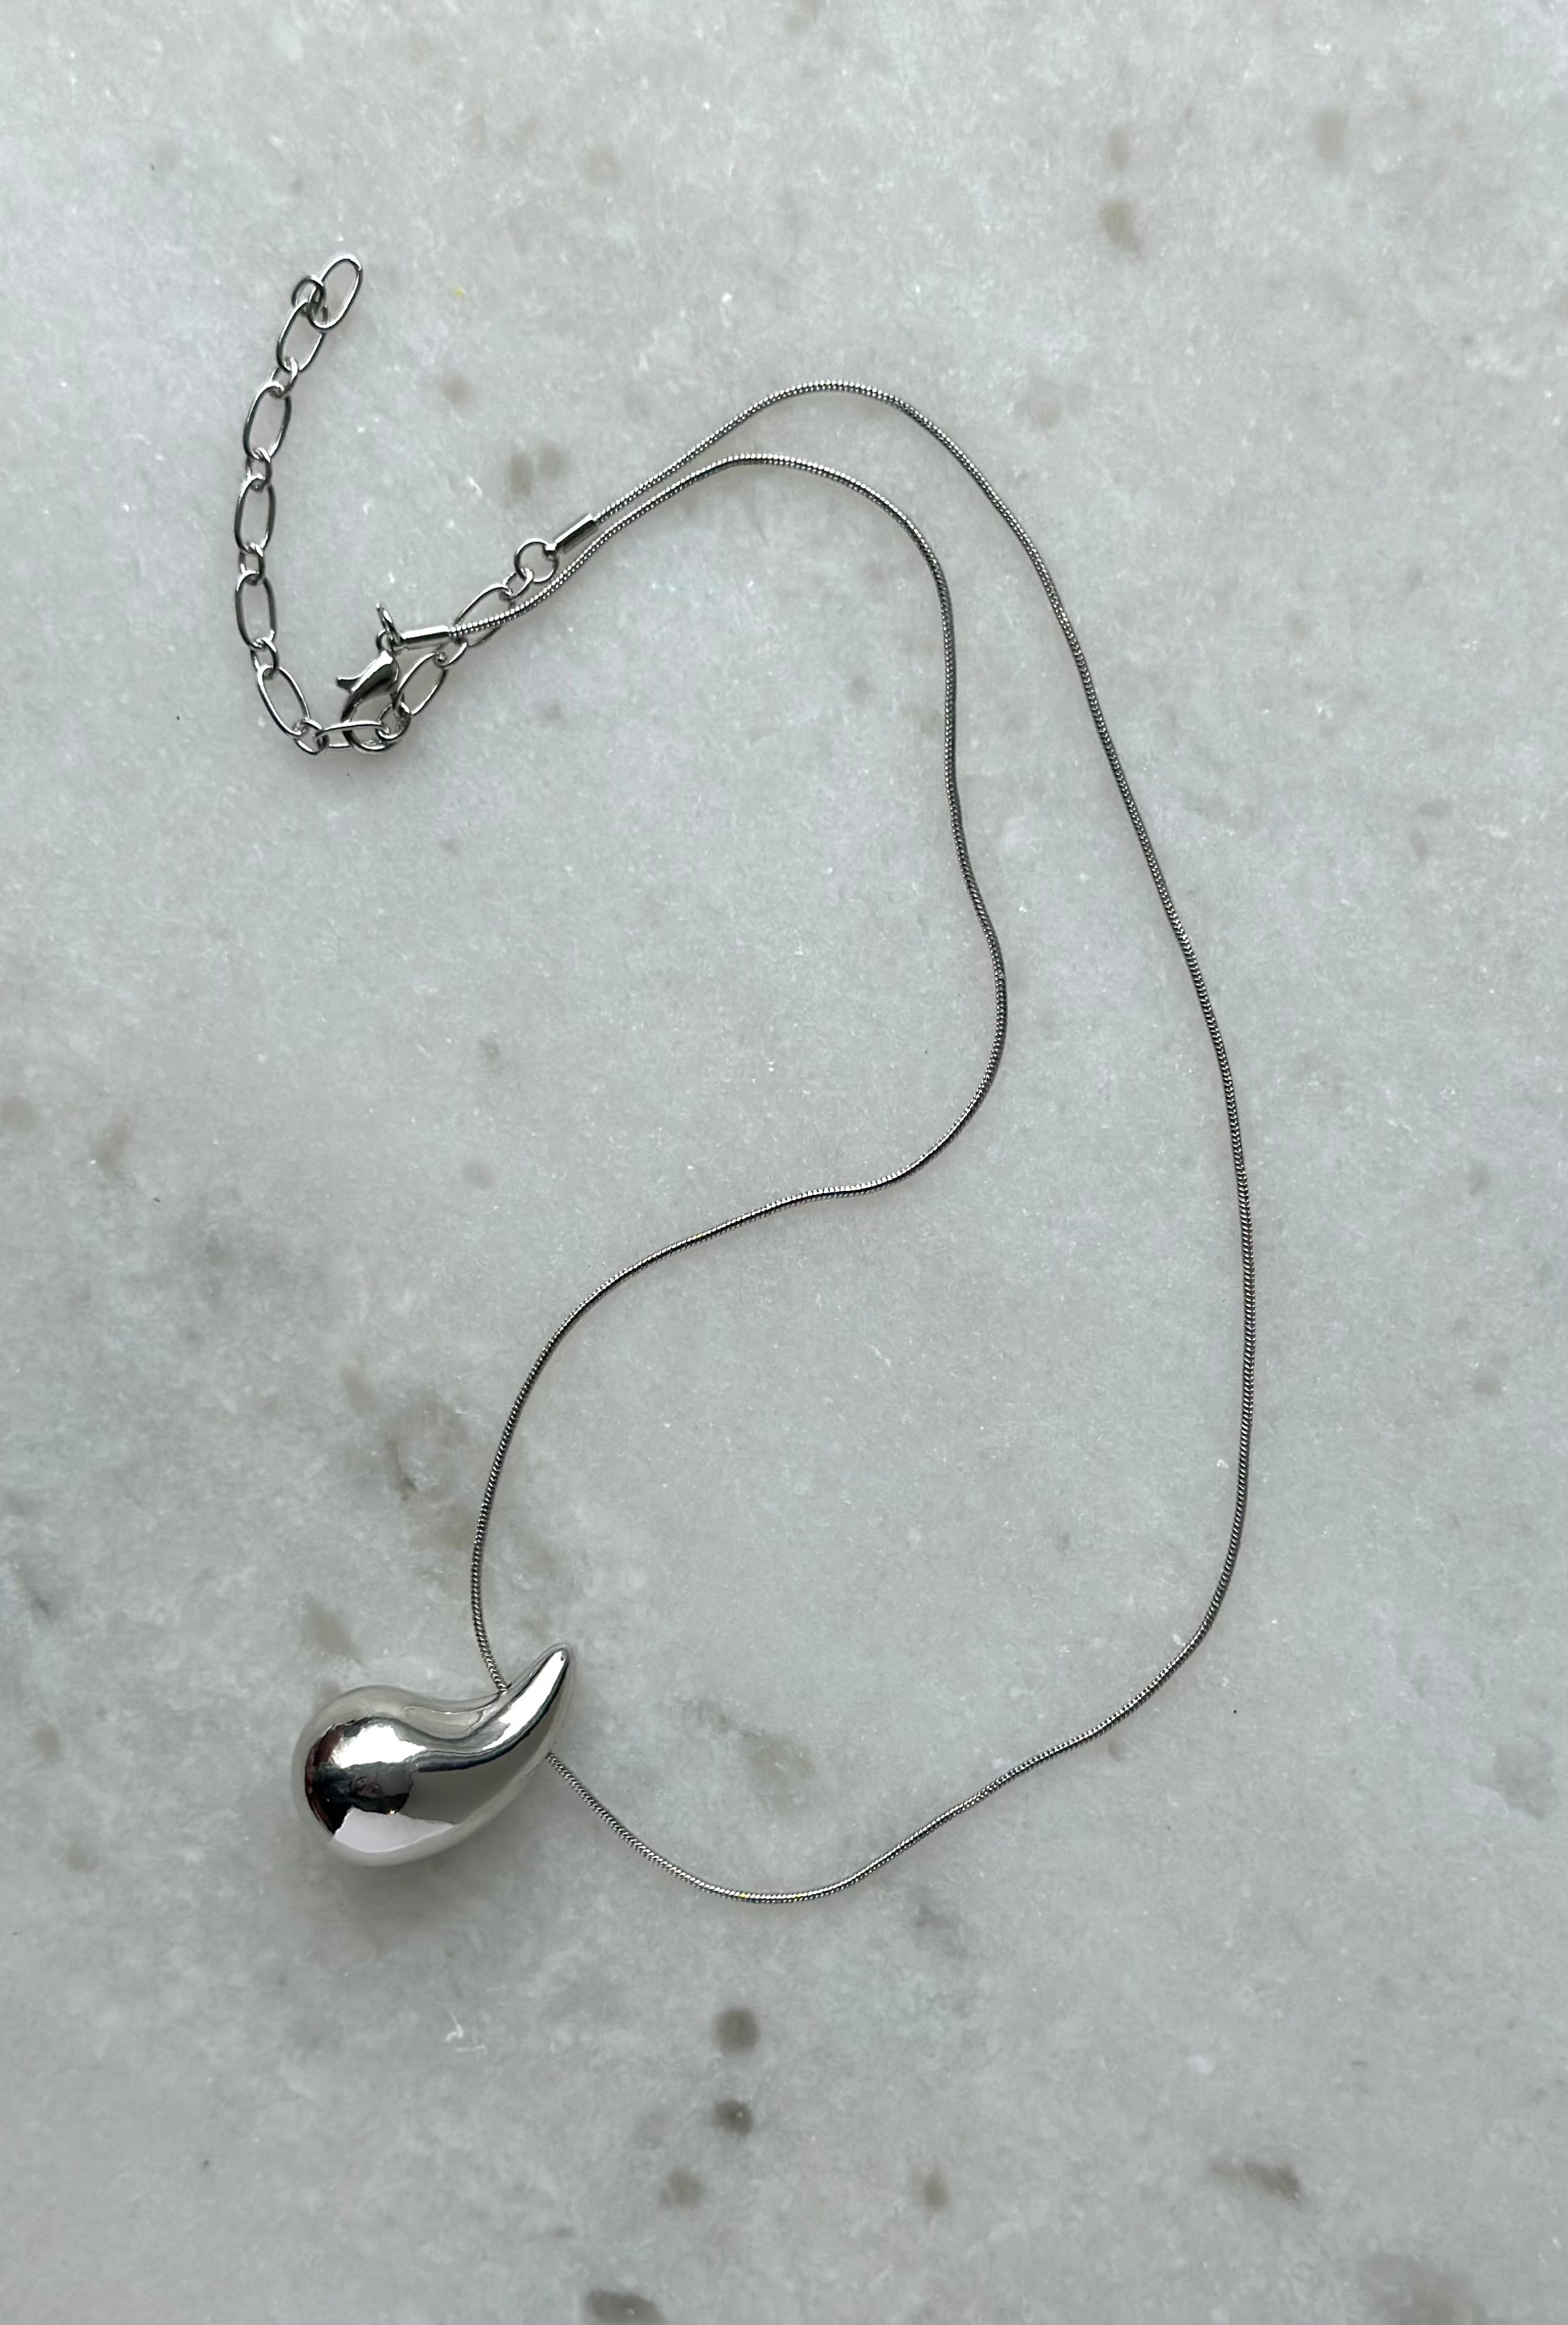 Tear Drop Necklace- Silver